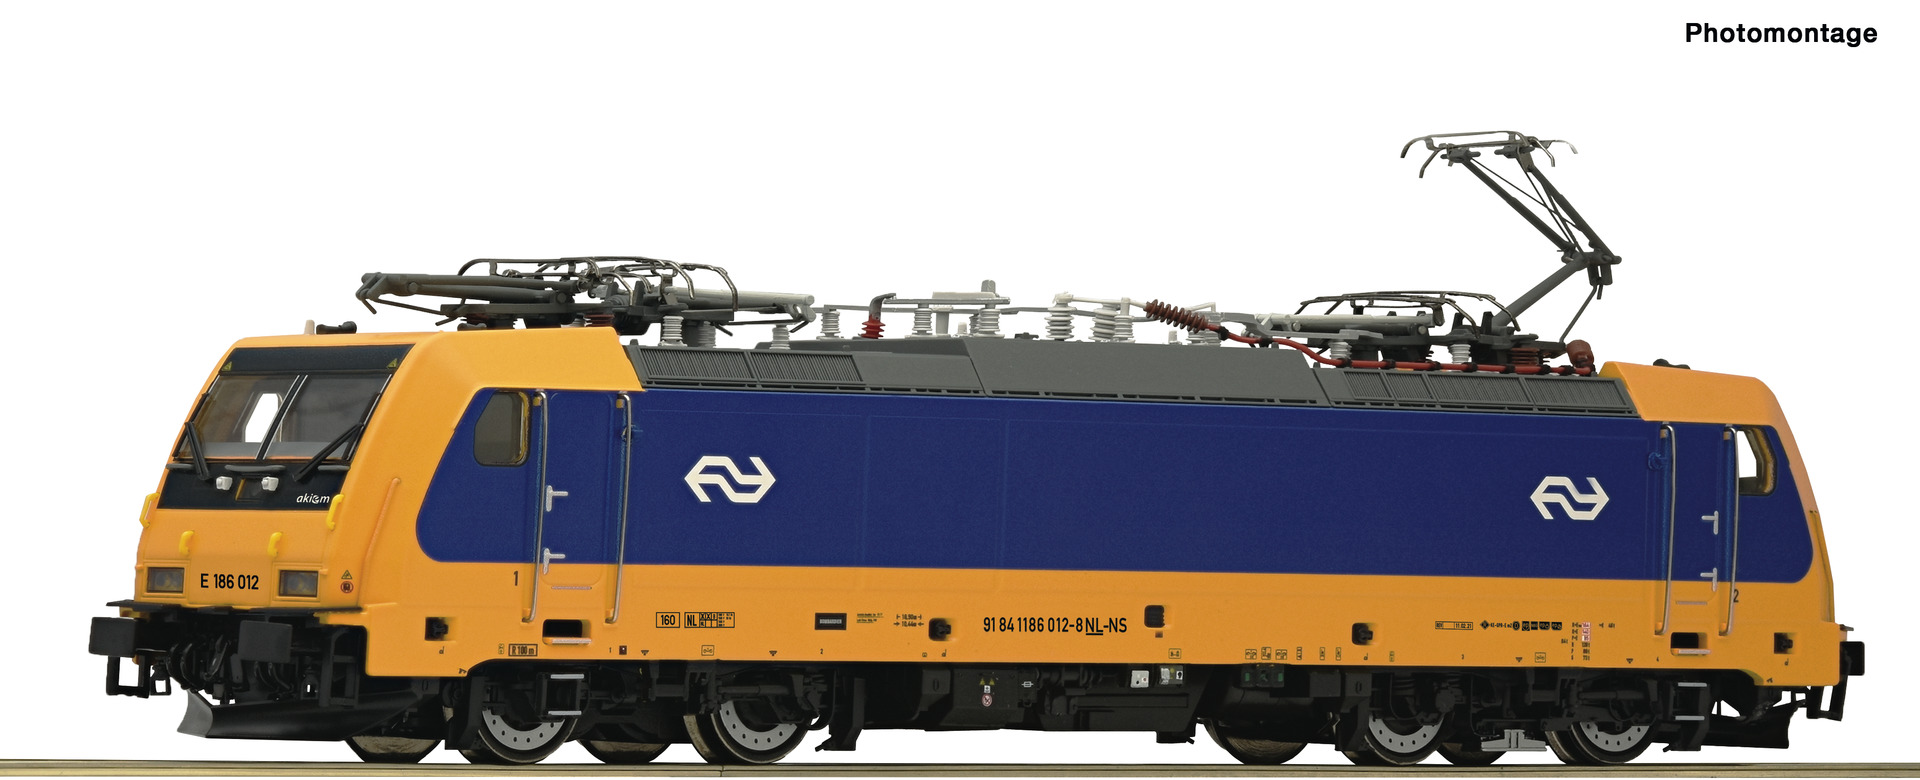 Roco 70654 H0 NS elektrische locomotief E 186 012, DC sound